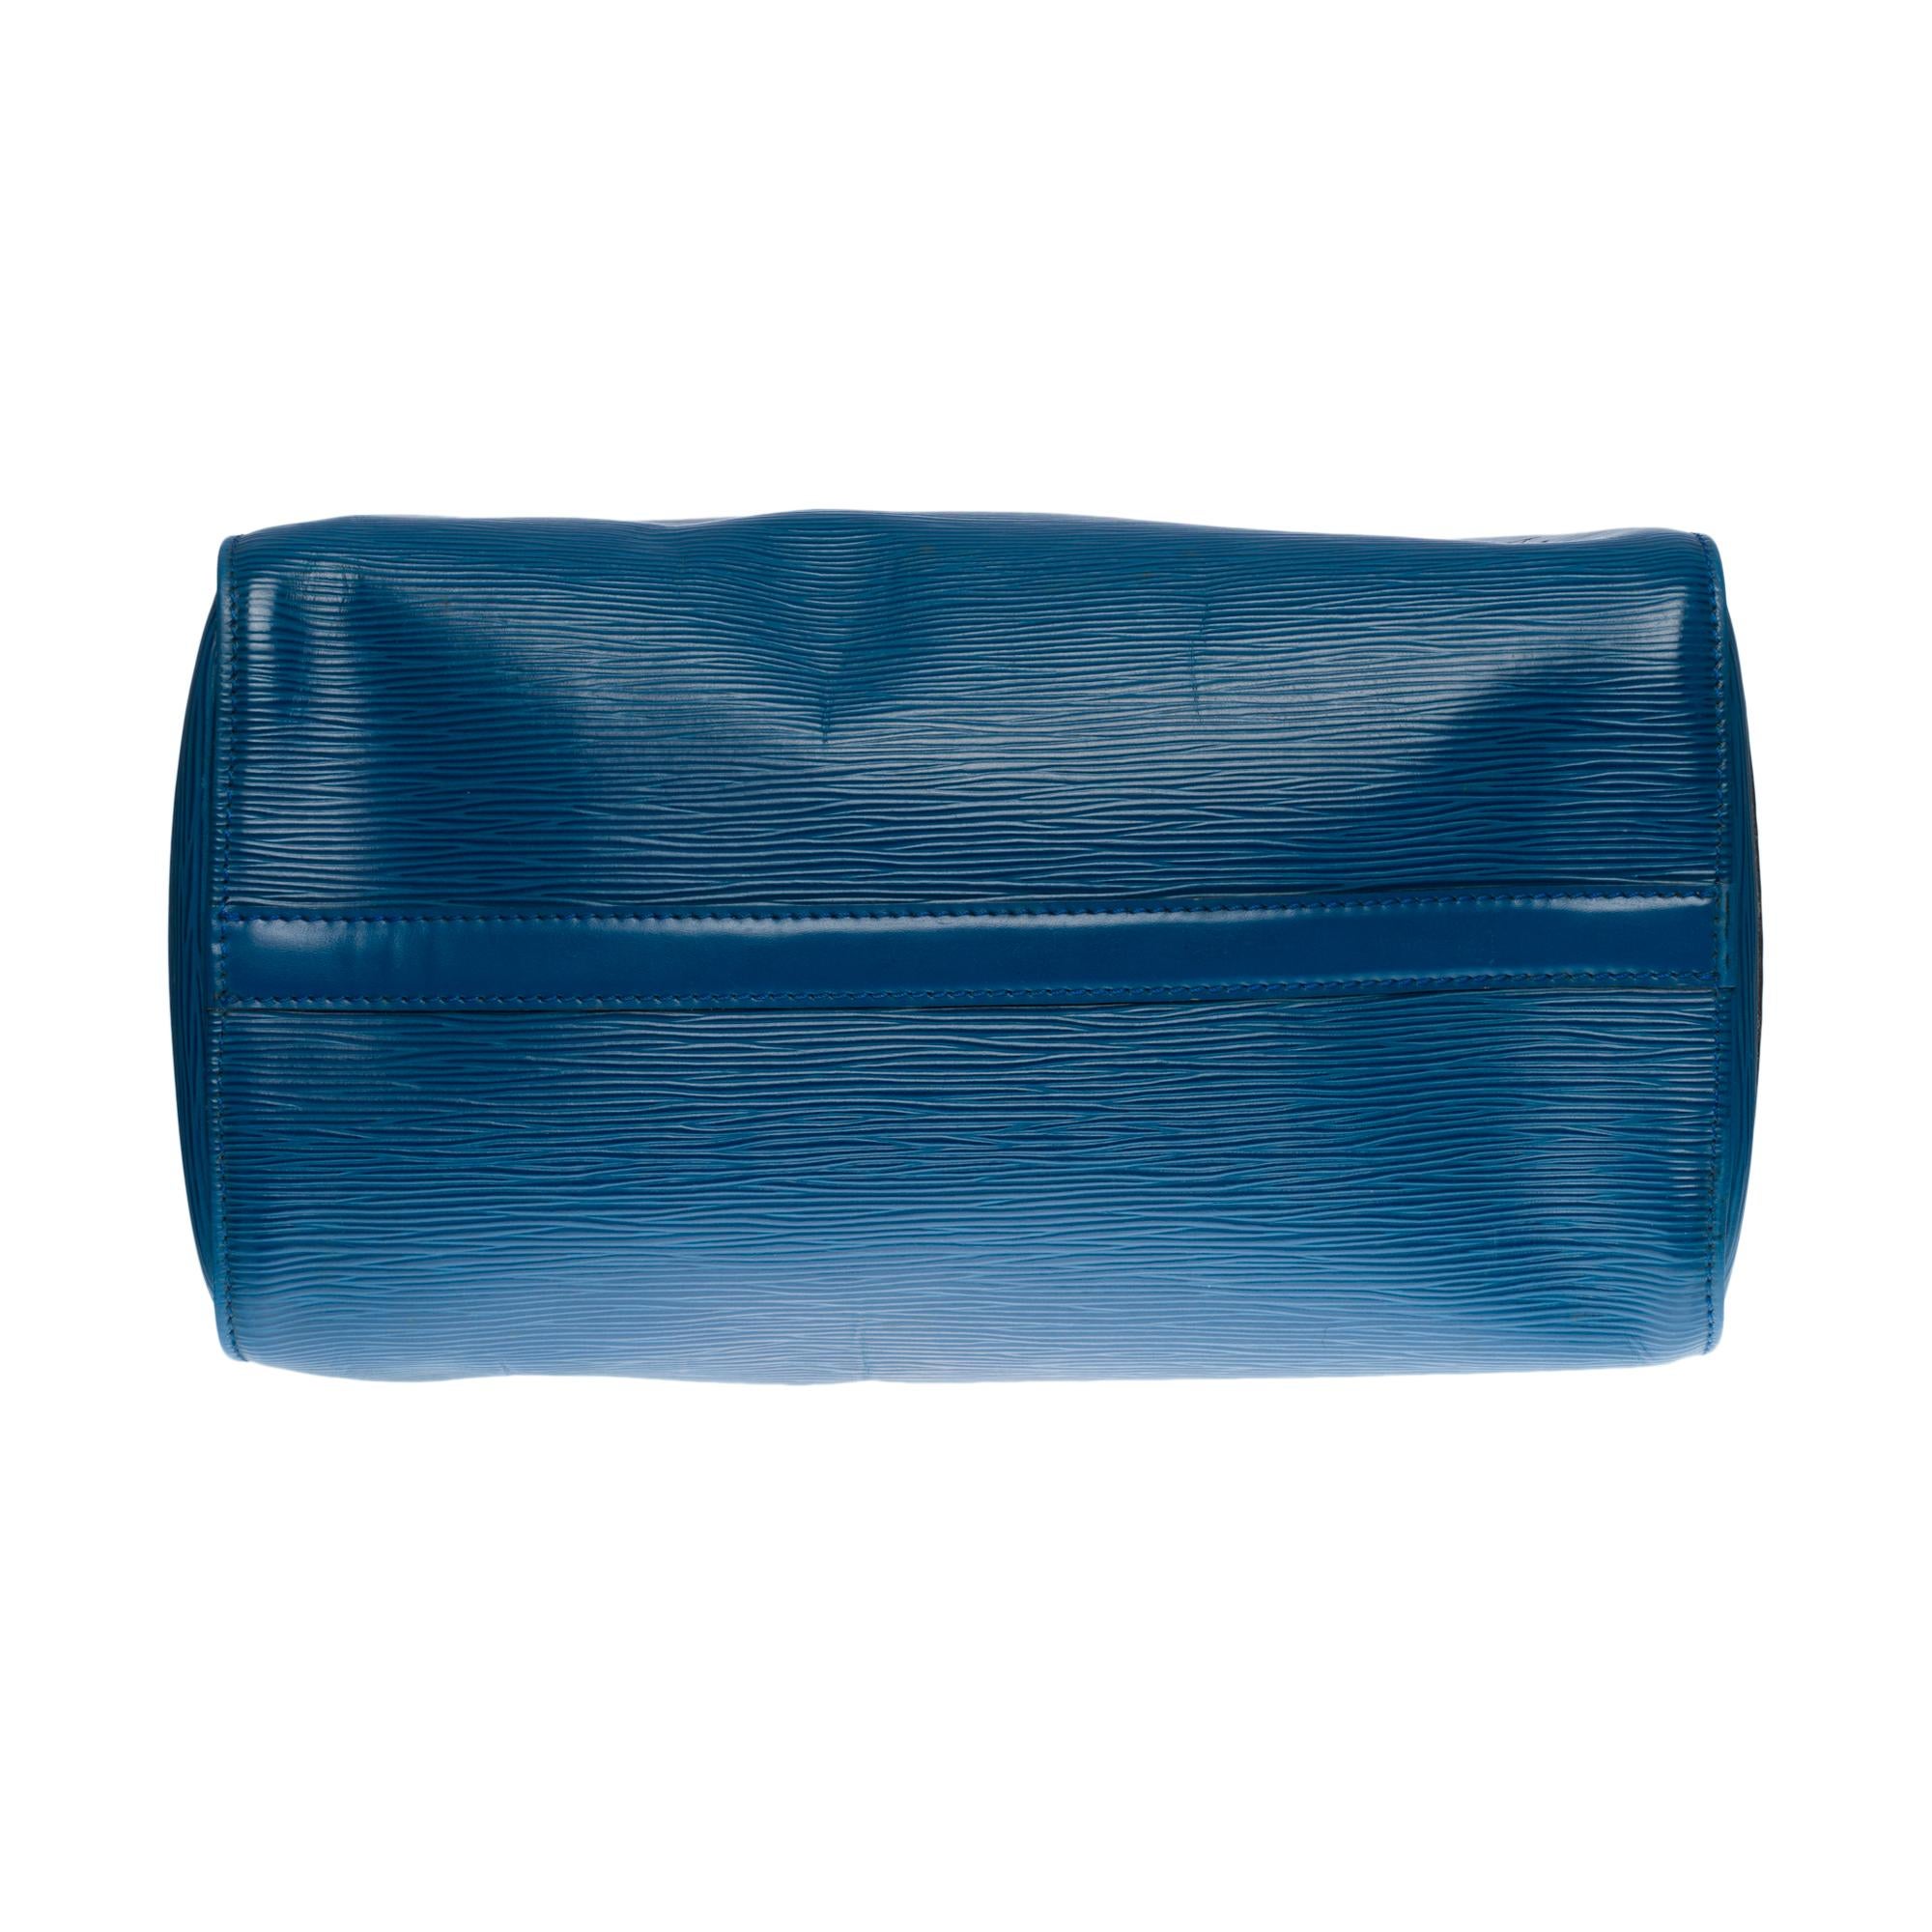 Louis Vuitton Speedy 30 Handtasche aus blauem kobaltfarbenem Pi-Leder und goldenen Beschlägen 4